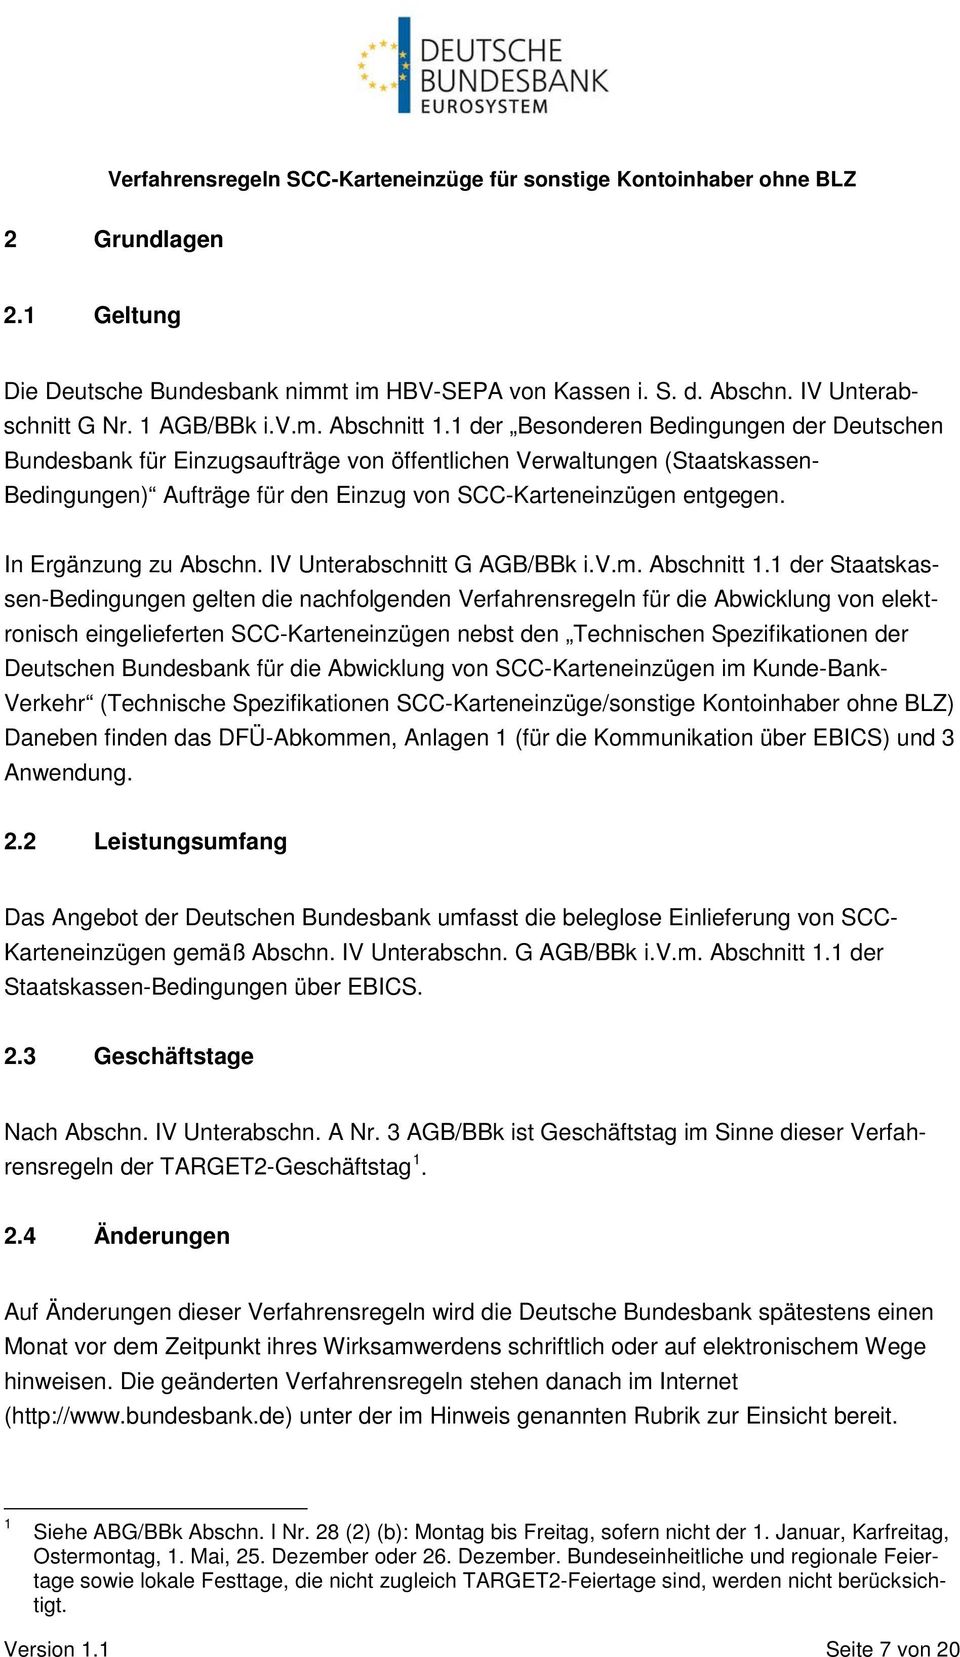 In Ergänzung zu Abschn. IV Unterabschnitt G AGB/BBk i.v.m. Abschnitt 1.